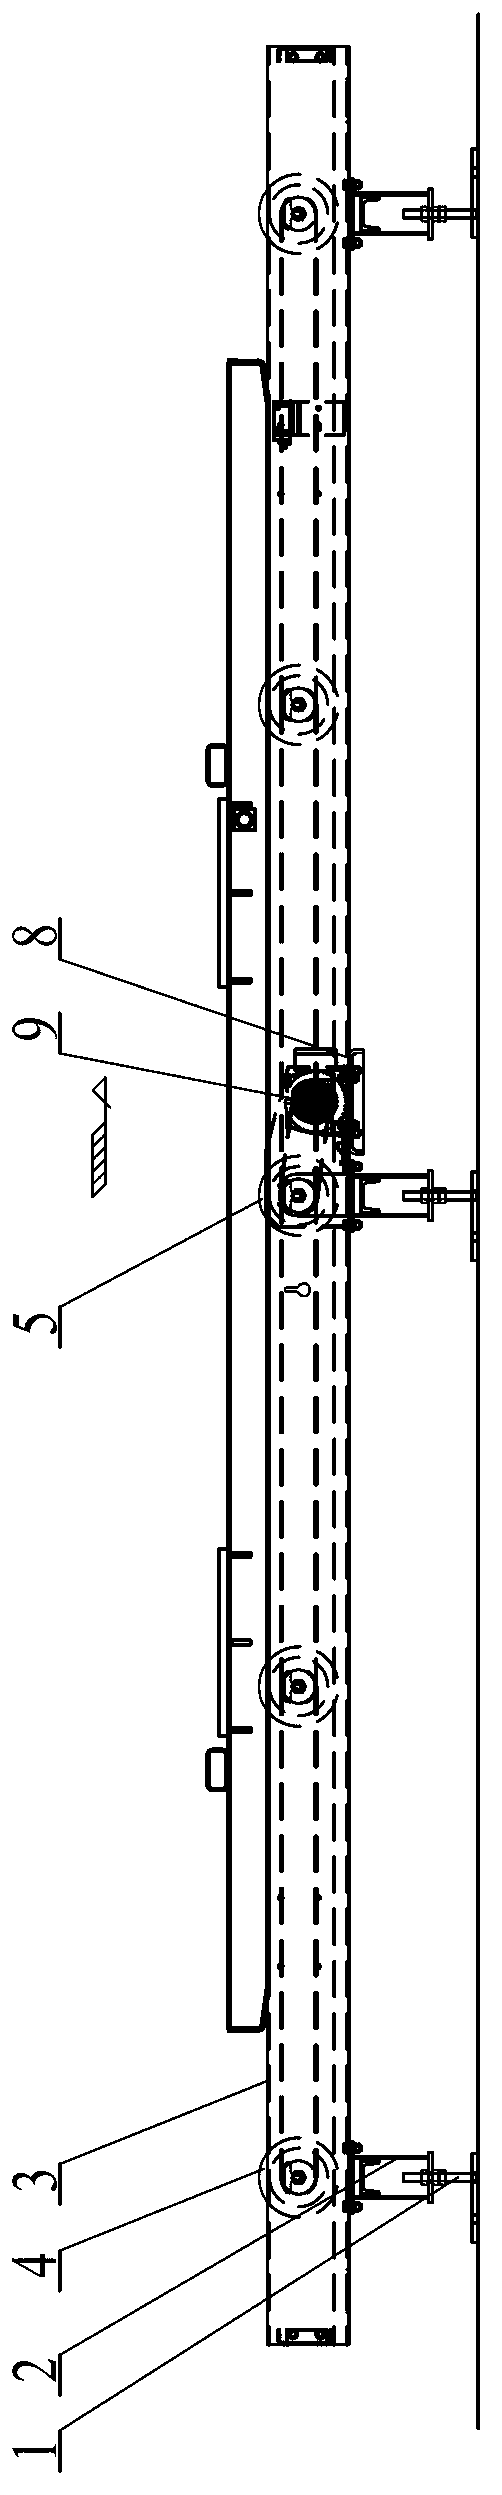 Flat belt roller bed